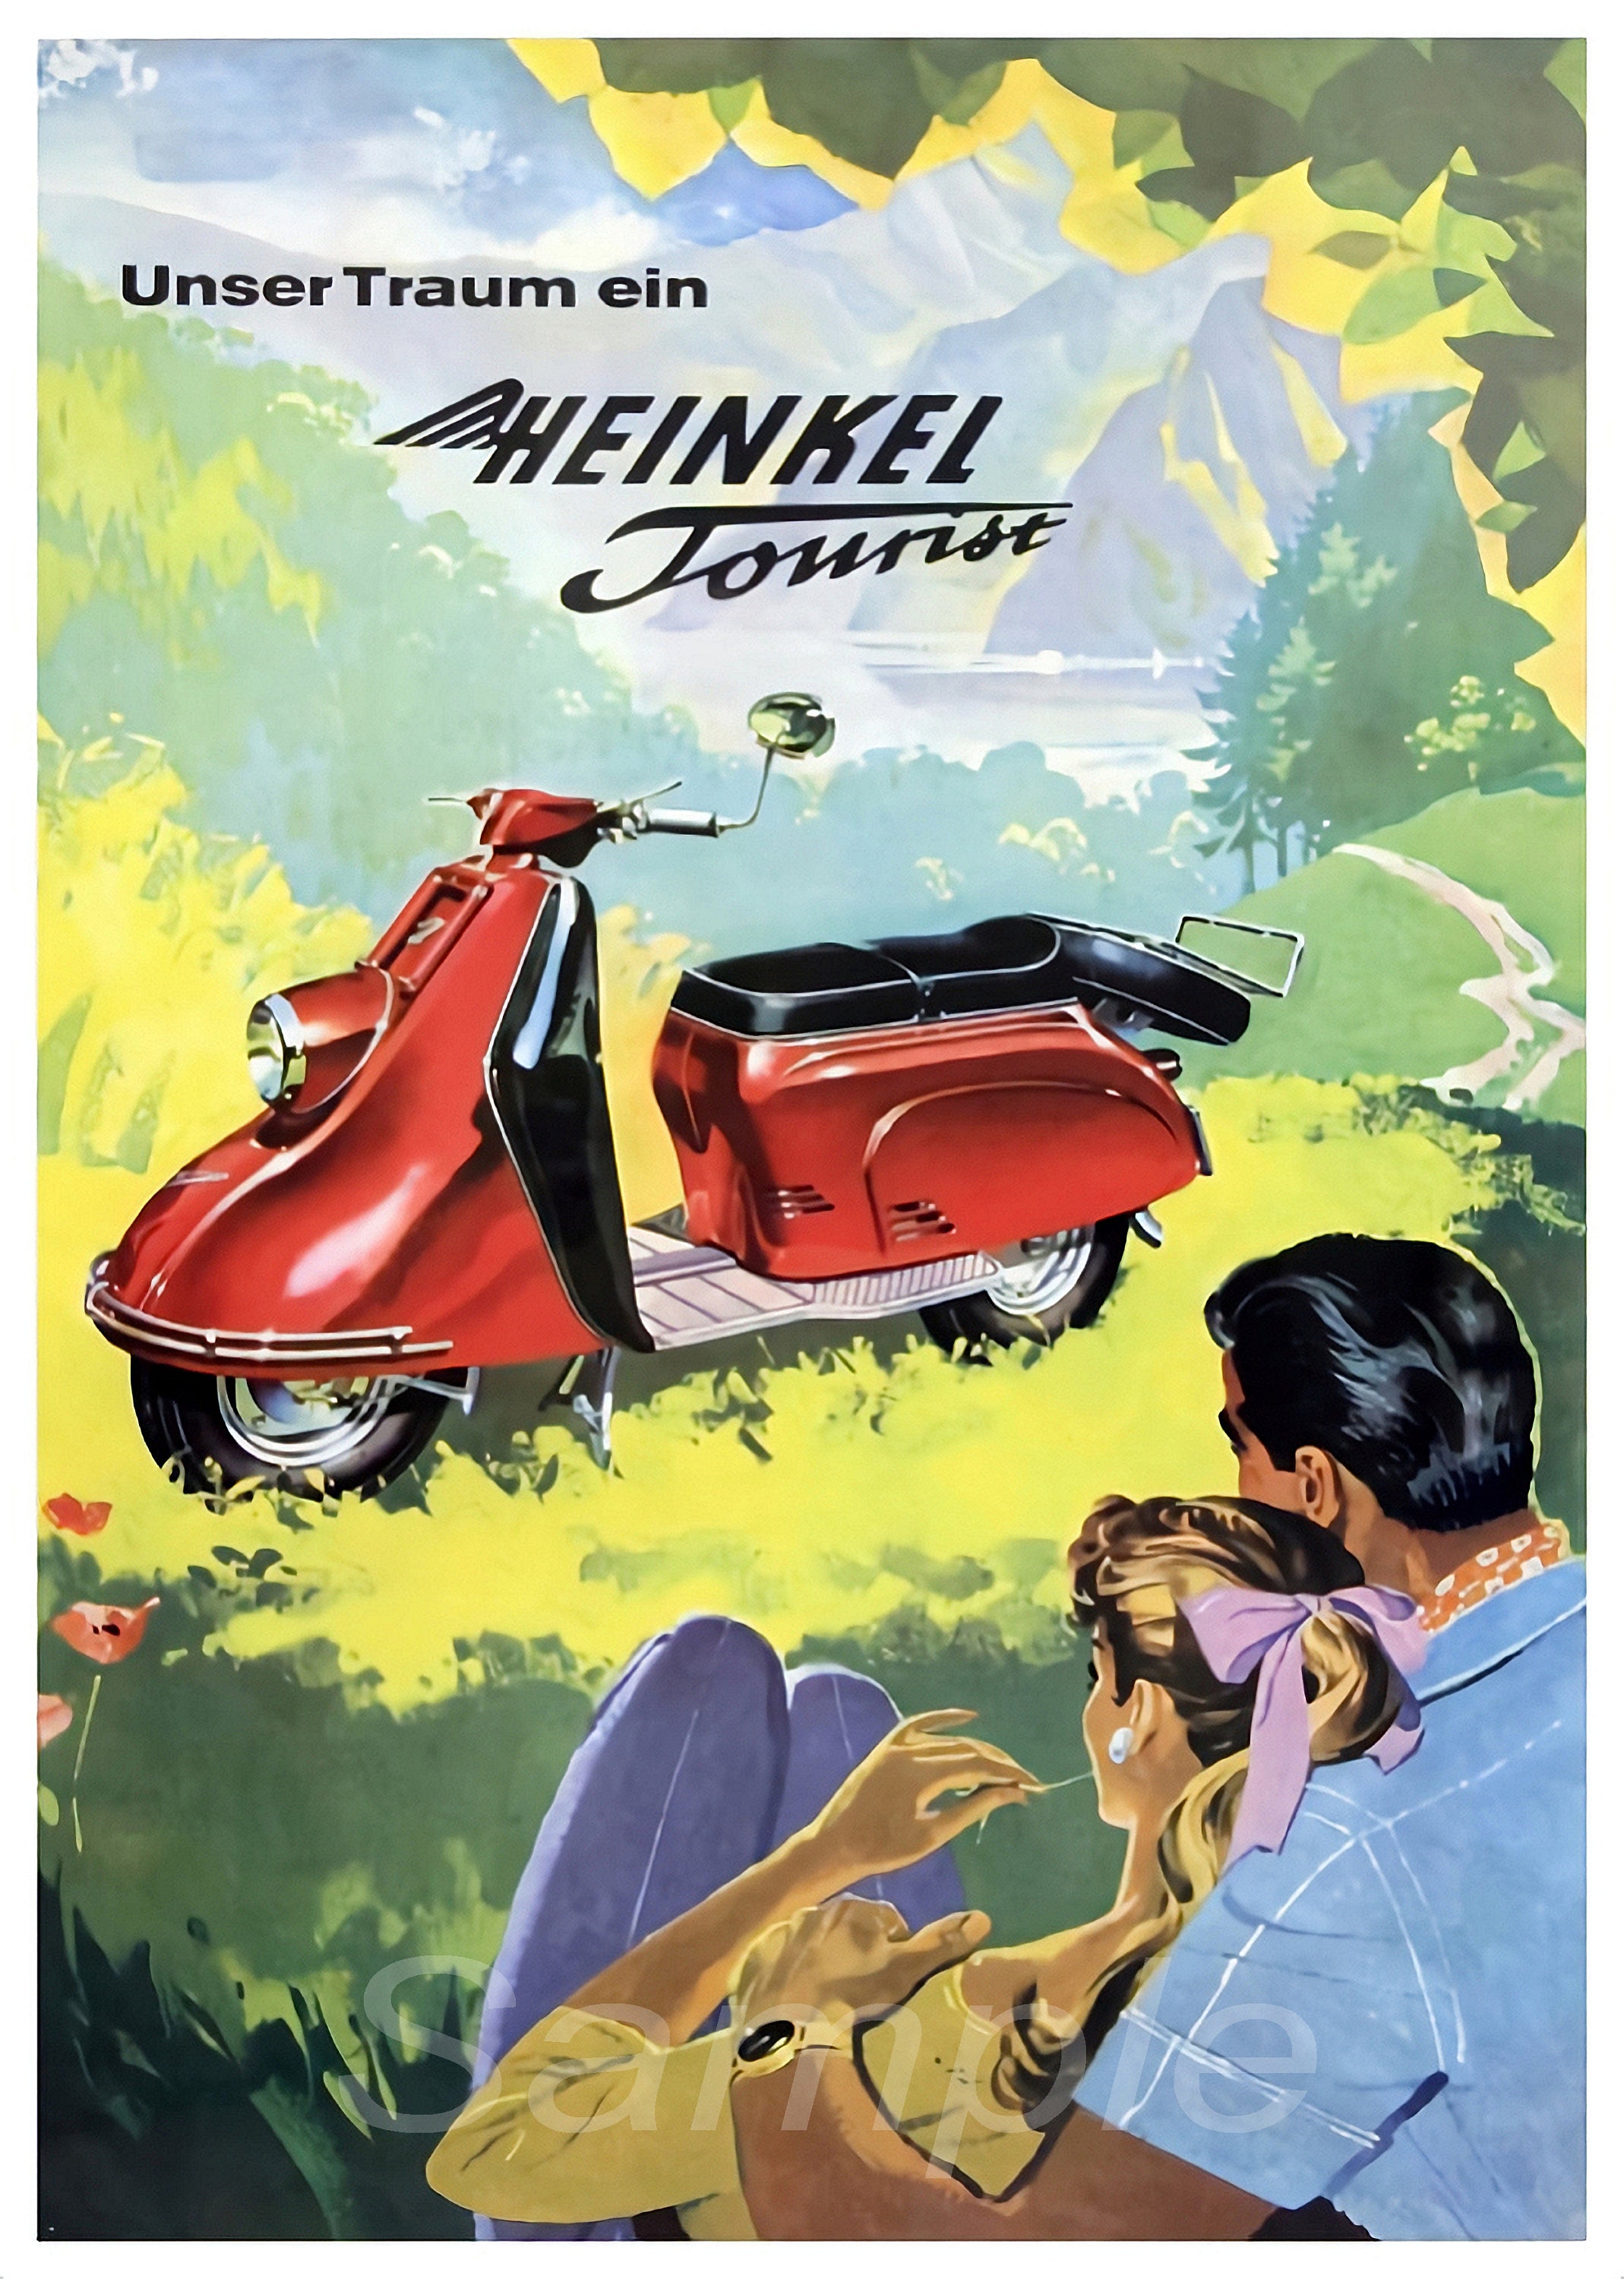 navigation nikkel Kreta Vintage Heinkel Tourist Scooter Poster Print - Etsy